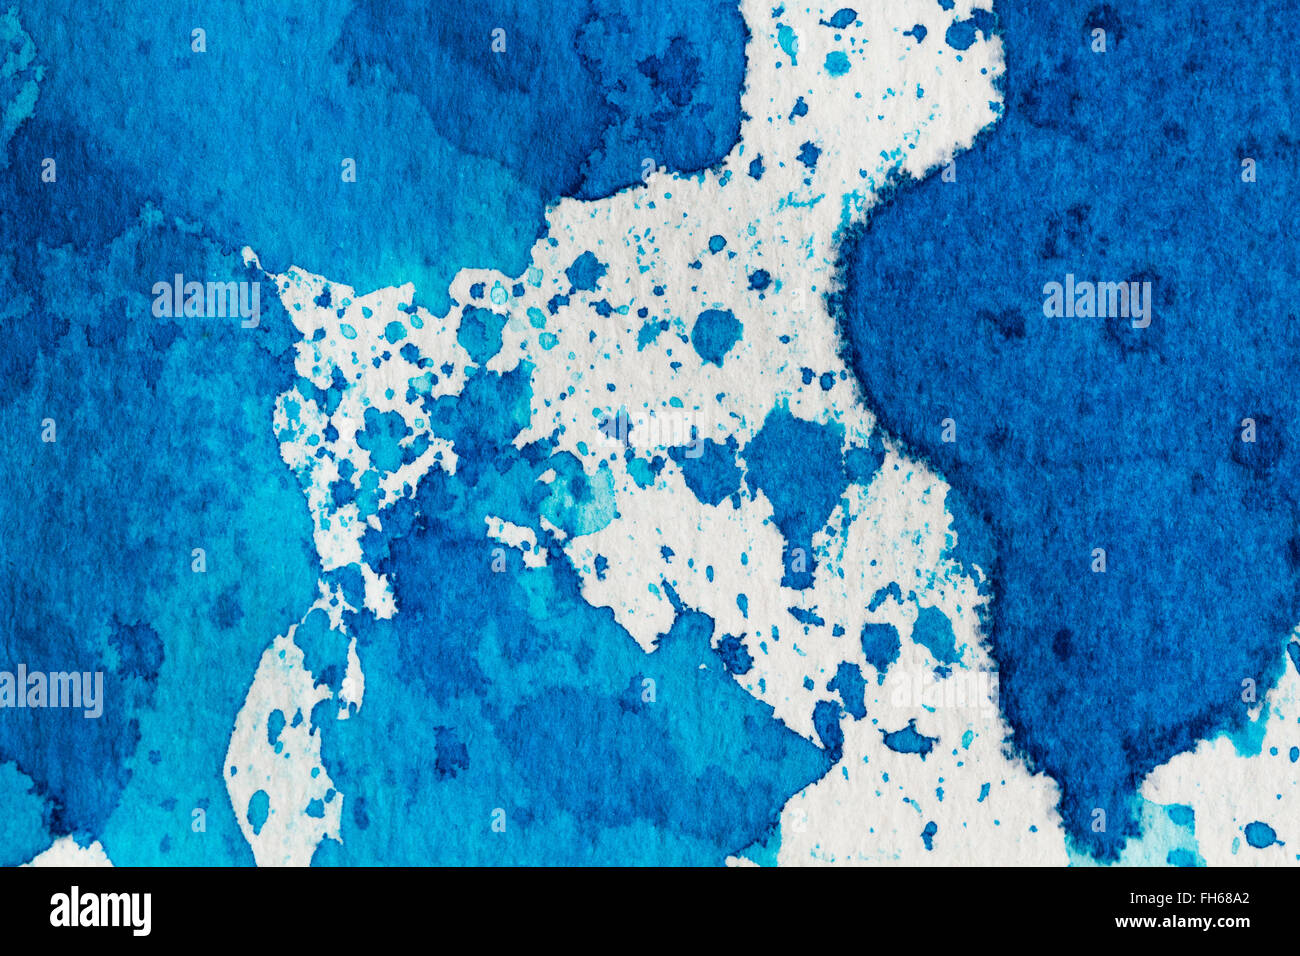 Aquarell Blau abstrakt mit Tinte Flecken auf weissem grobkörniges Papier. Als Textur oder Hintergrund verwenden. Design Element. Stockfoto